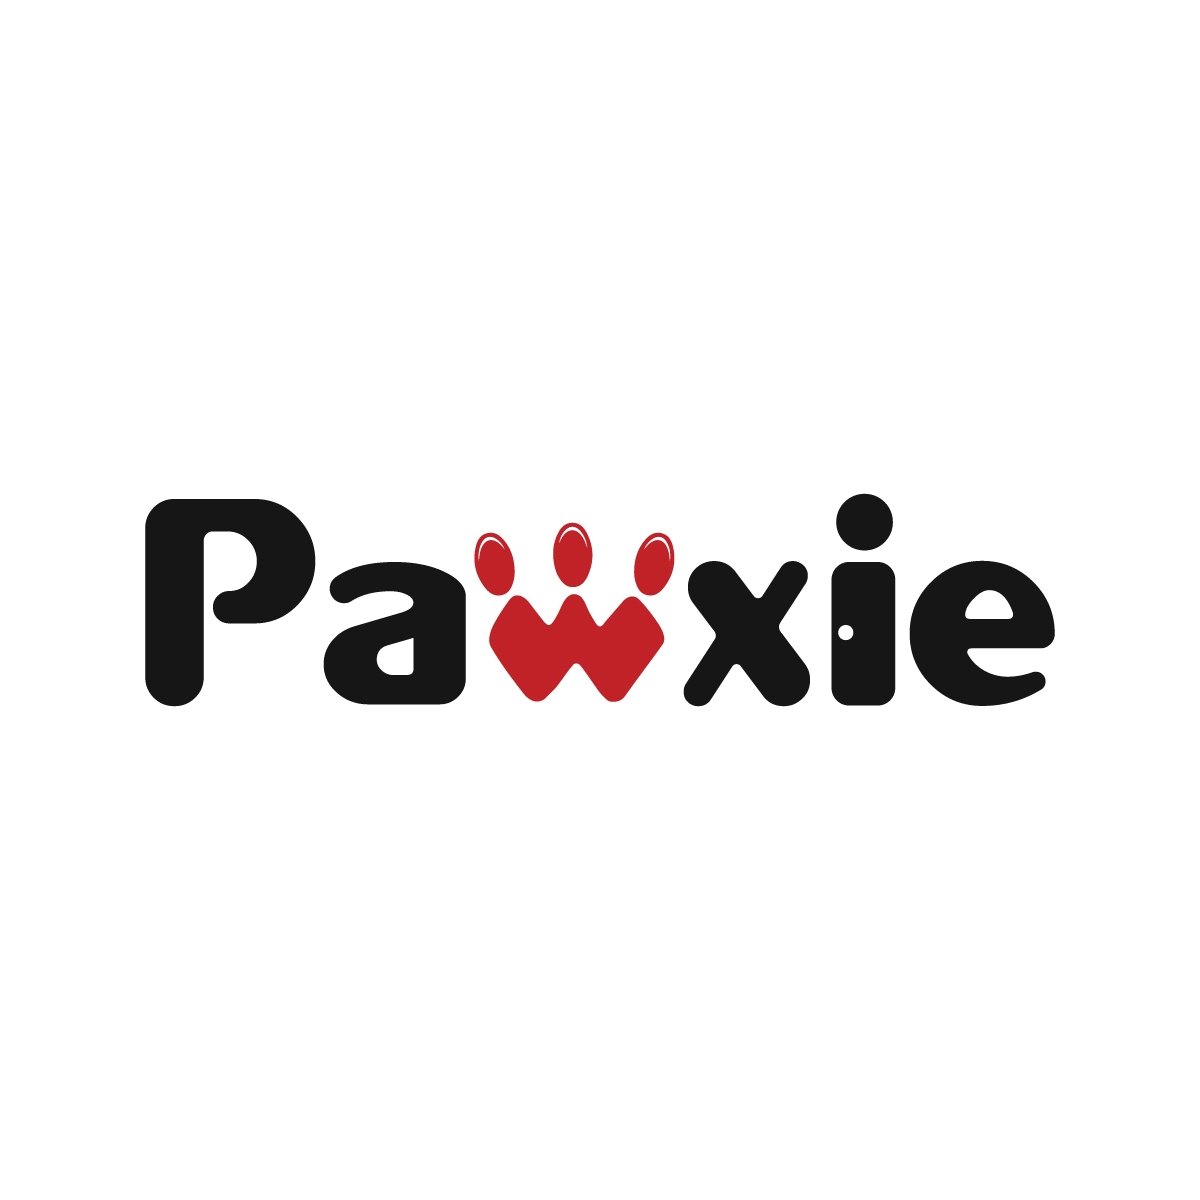 Pawxie logo